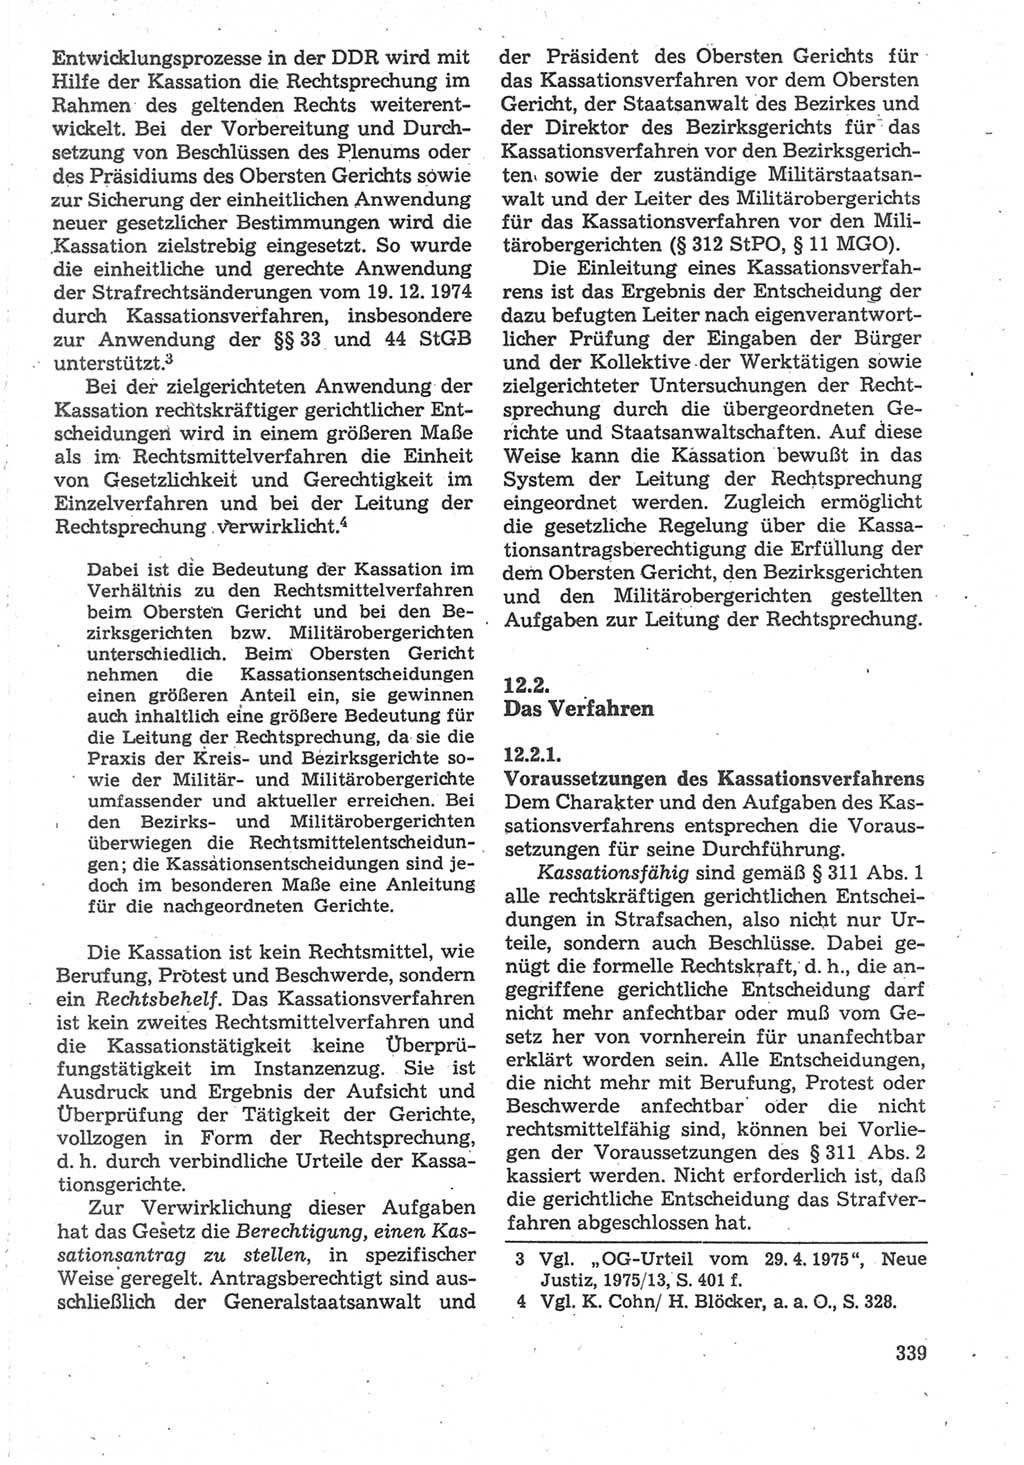 Strafverfahrensrecht [Deutsche Demokratische Republik (DDR)], Lehrbuch 1987, Seite 339 (Strafverf.-R. DDR Lb. 1987, S. 339)